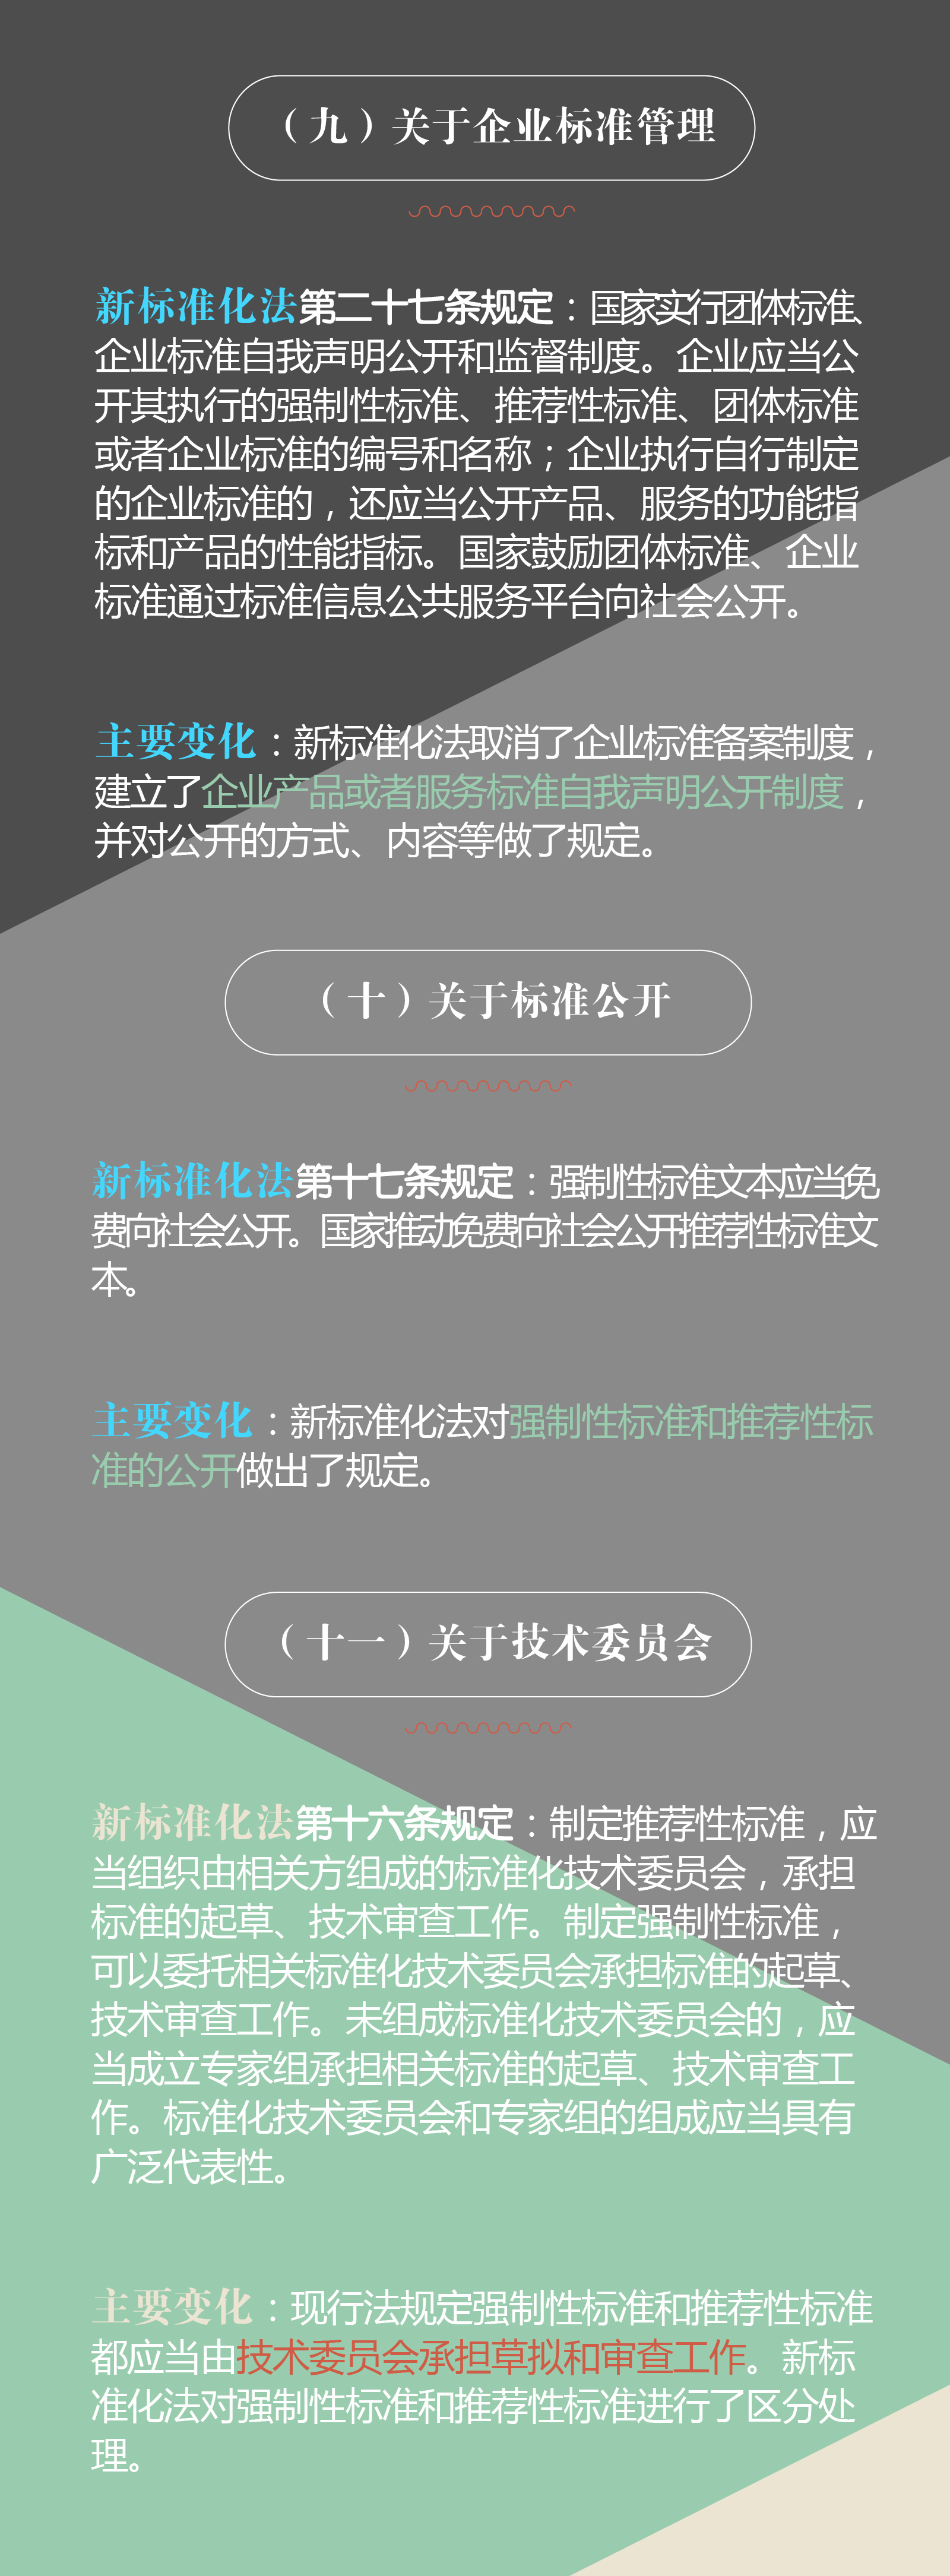 新修订的《中华人民共和国标准化法》于2018年1月1日起正式实施 _标准信息_质量\标准_中国洗涤用品行业信息网